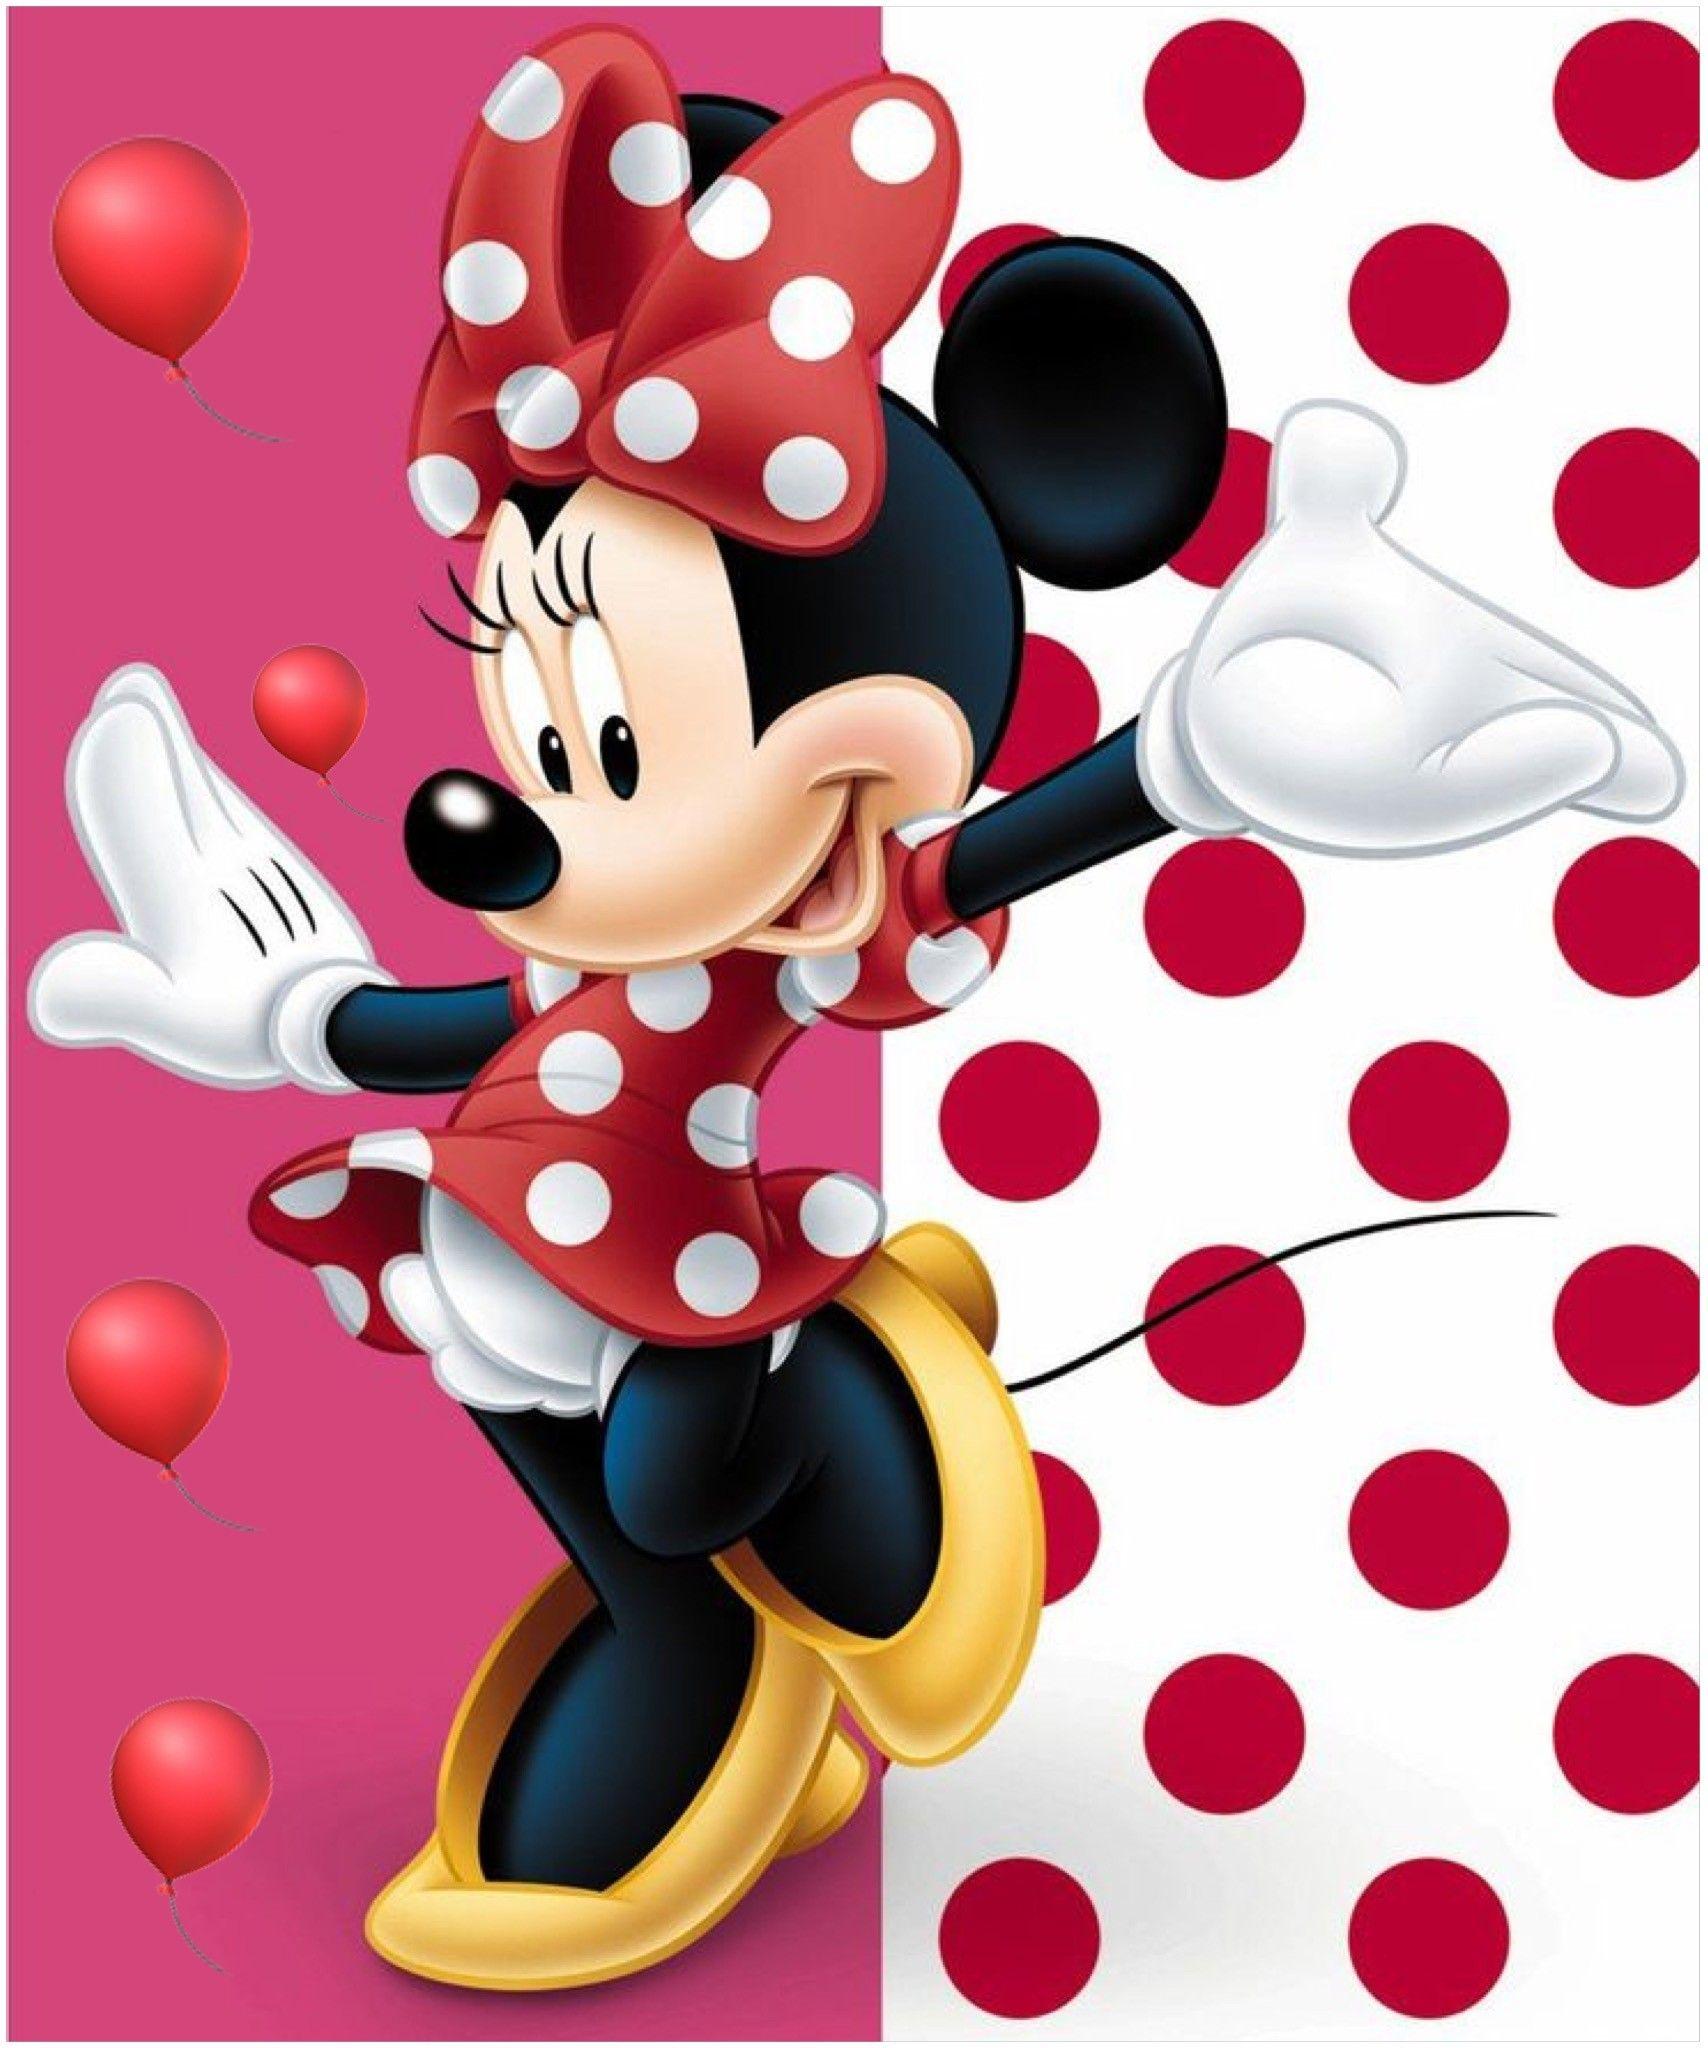 Minnie Mouse Wallpapers - Top Những Hình Ảnh Đẹp